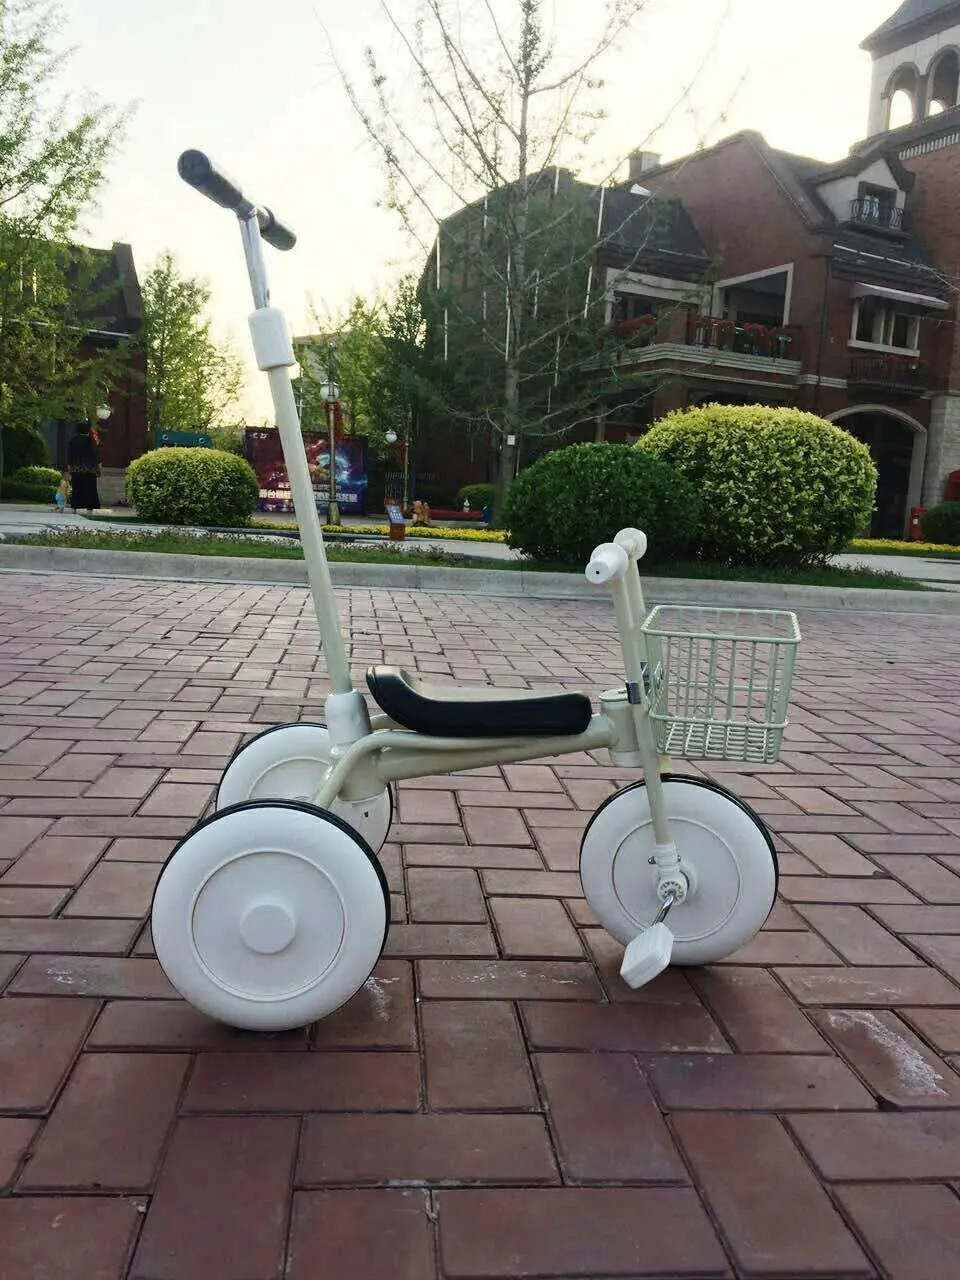 Детская трехколесная велосипедная тележка, Детская трехколесная коляска для велосипеда, Детская трехколесная коляска с корзинкой для покупок 3-14 лет